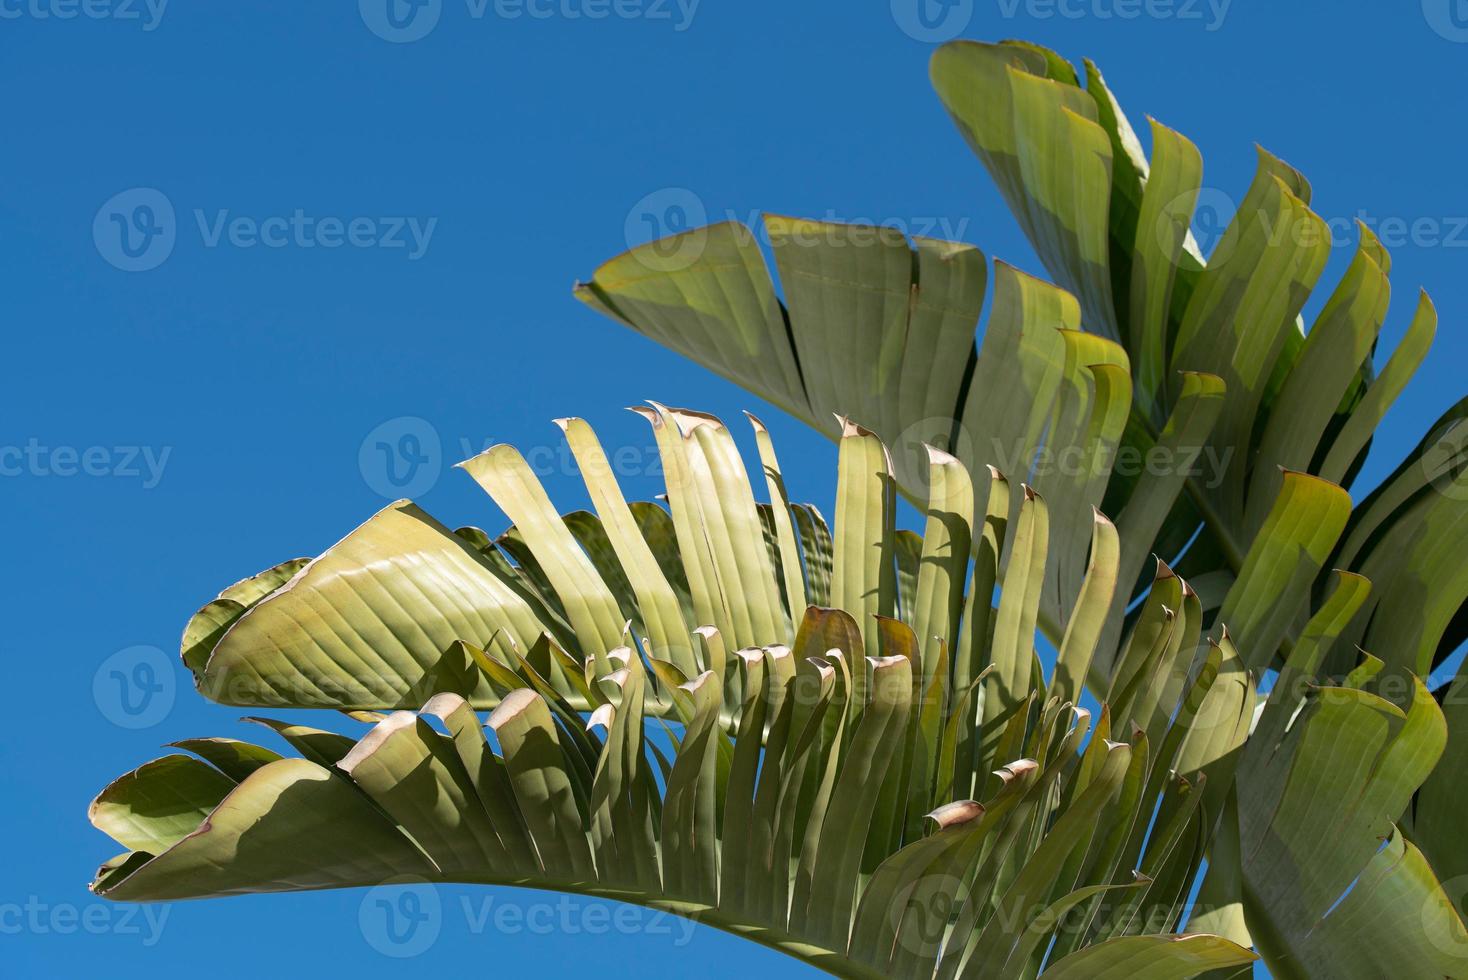 flera grön löv av en banan träd mot en blå himmel foto